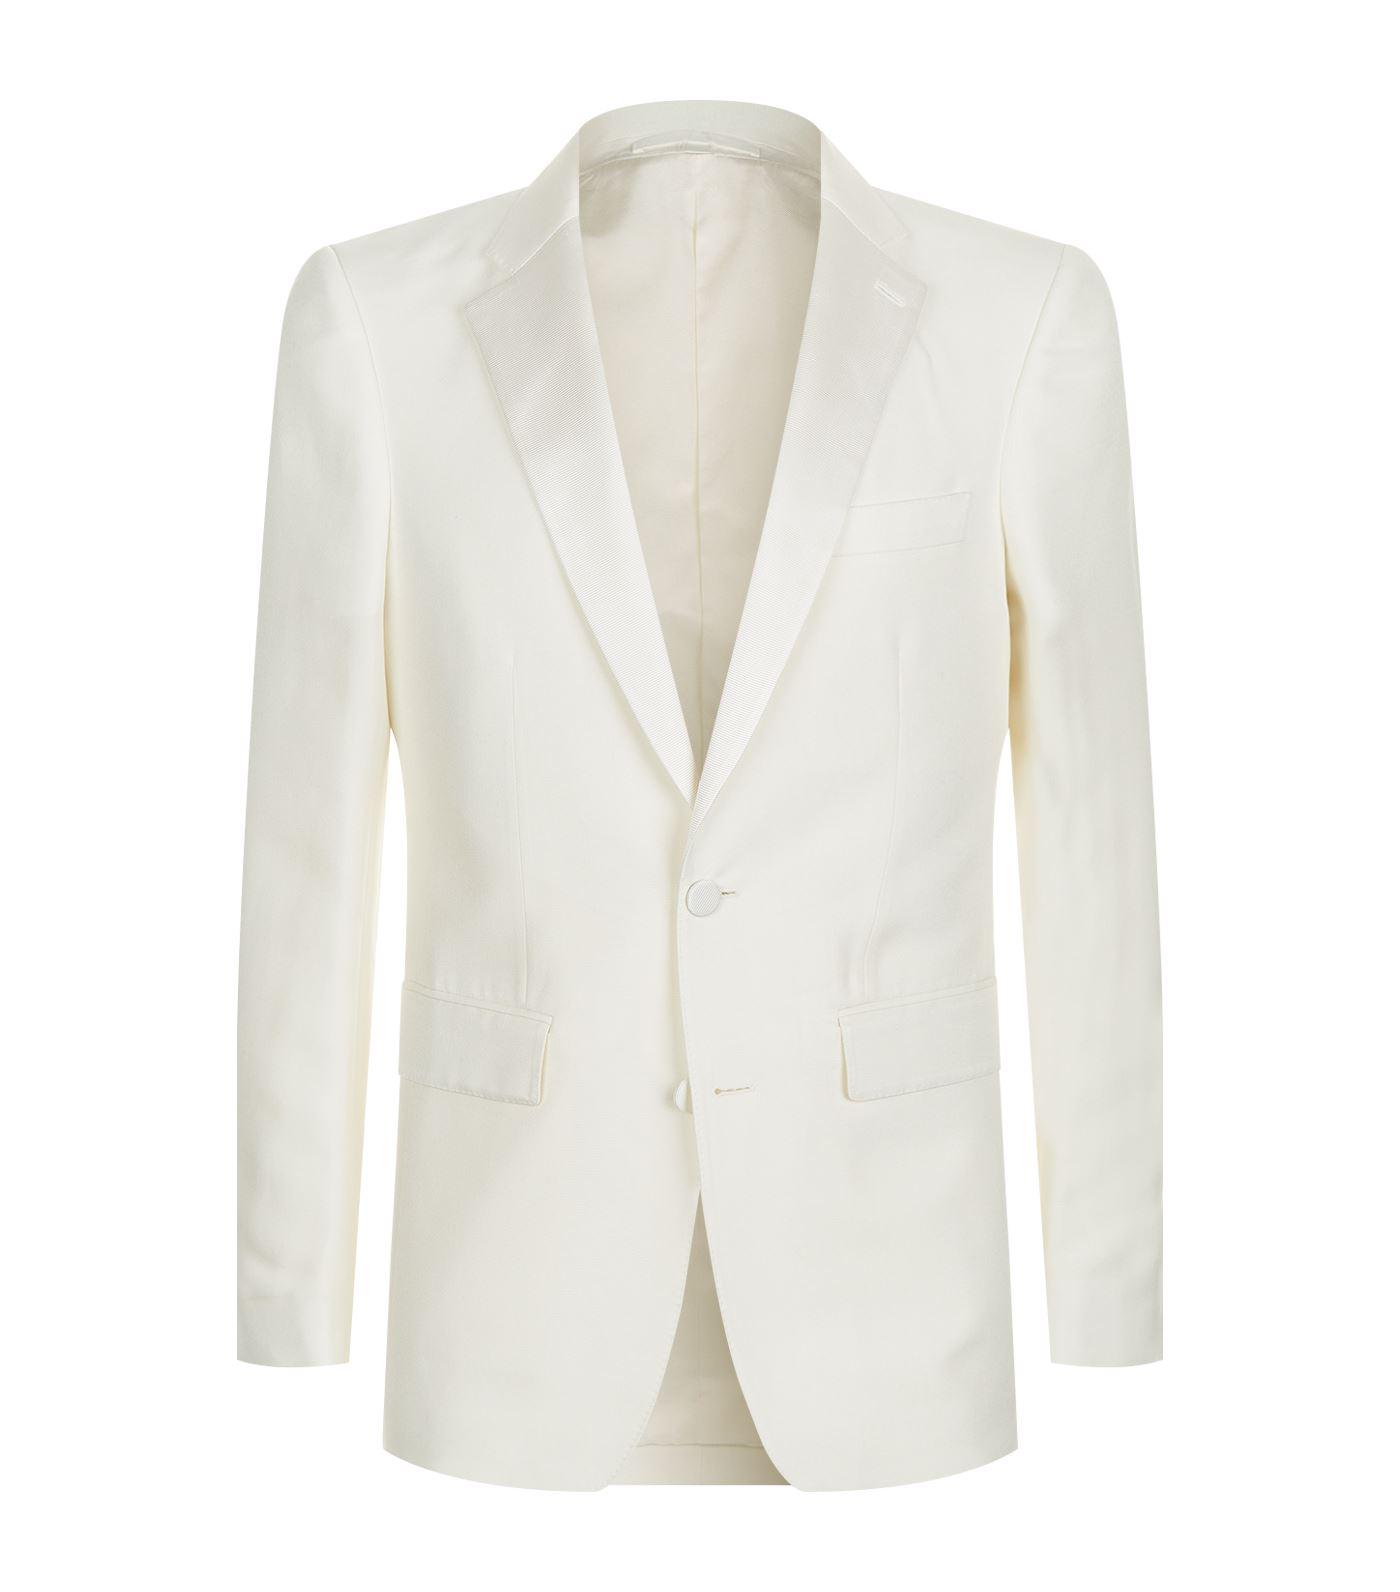 Burberry Silk Dinner Jacket in White for Men - Lyst